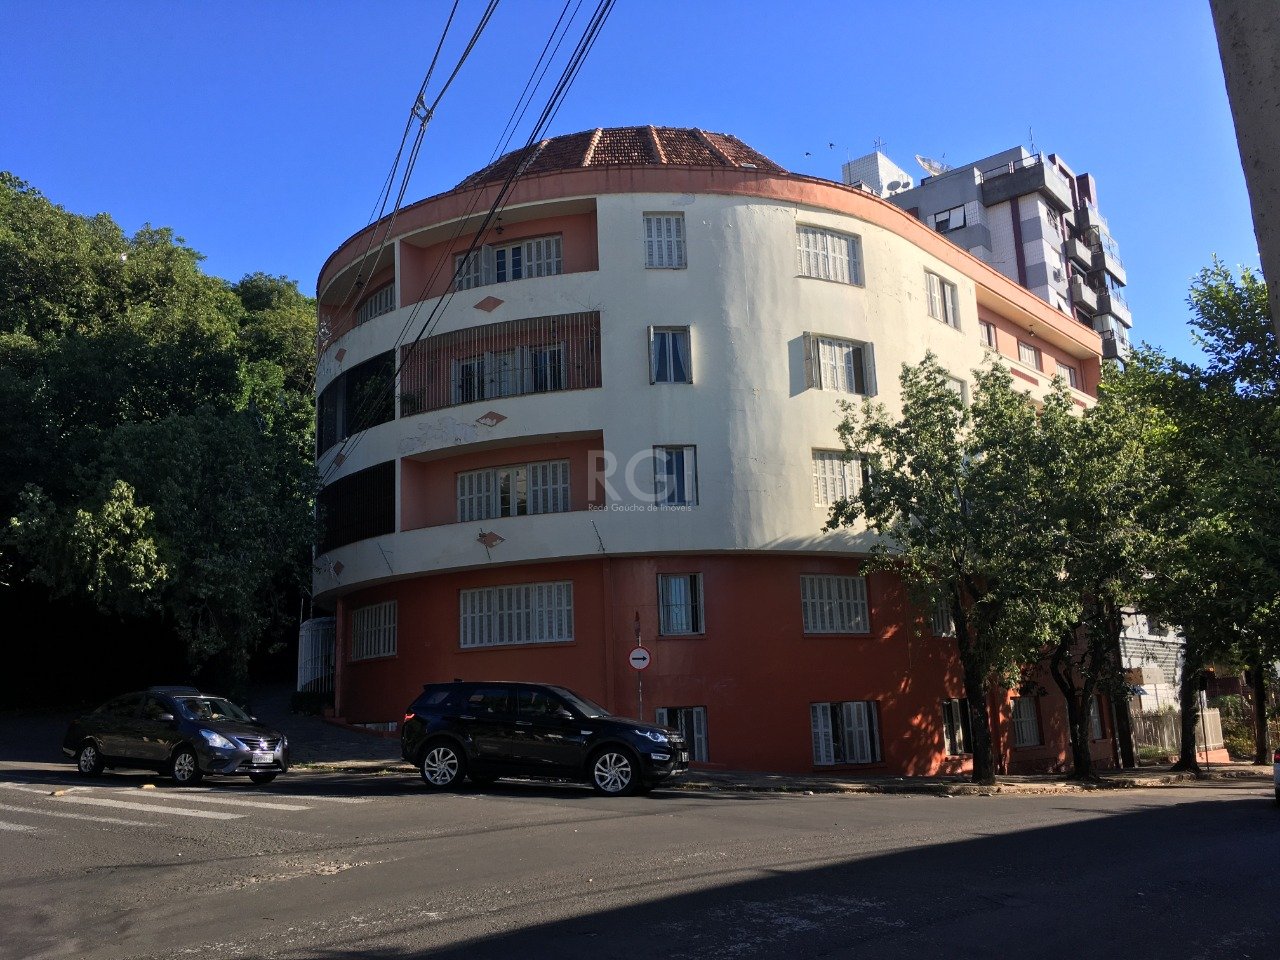 Apartamento com 94m², 3 dormitórios no bairro Moinhos de Vento em Porto Alegre para Comprar